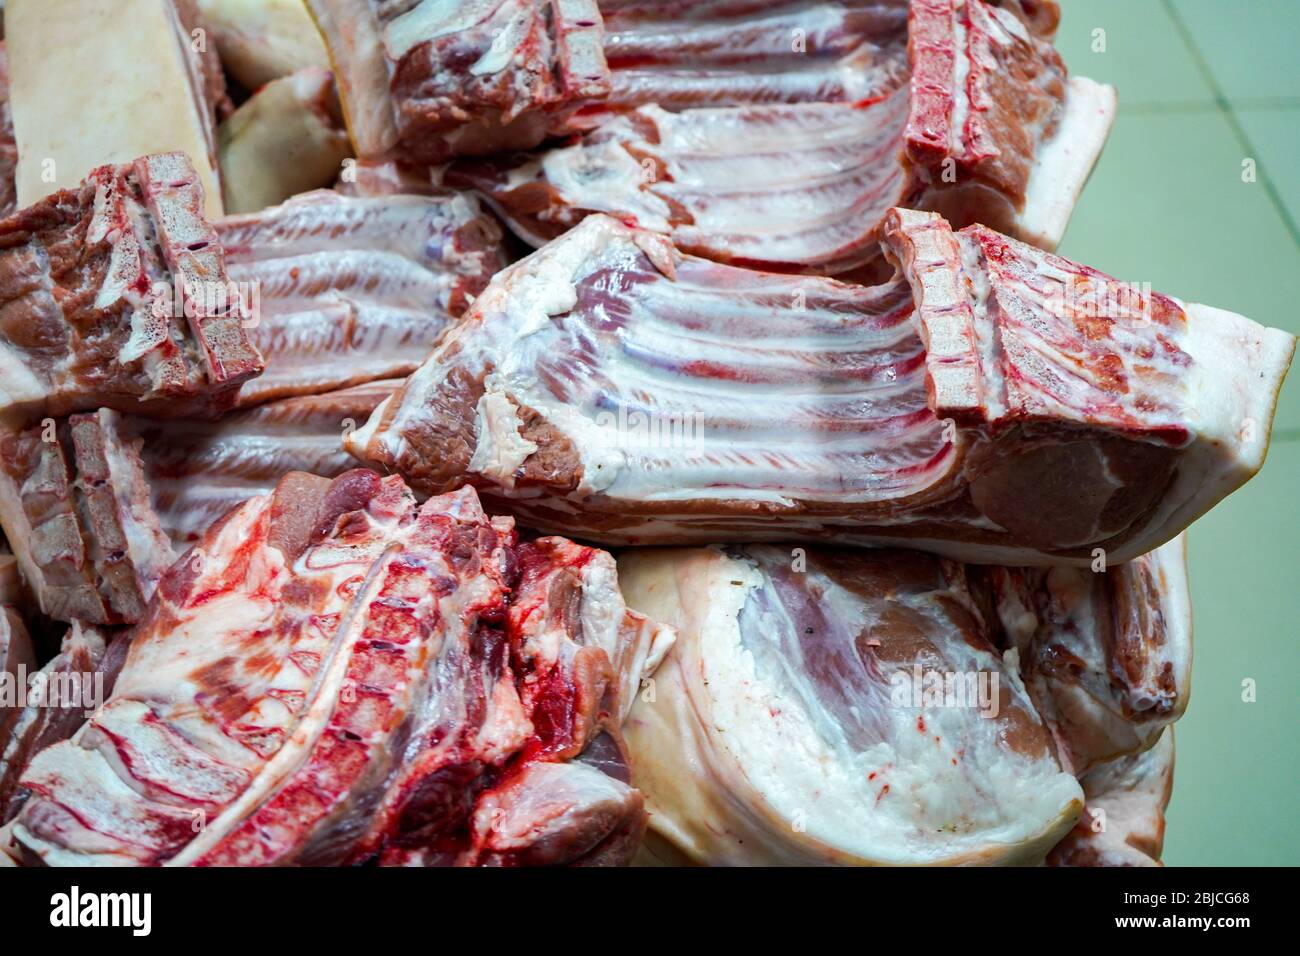 Morceaux de carcasse de porc. Parties hachées d'un porc. La viande froide est stockée Banque D'Images